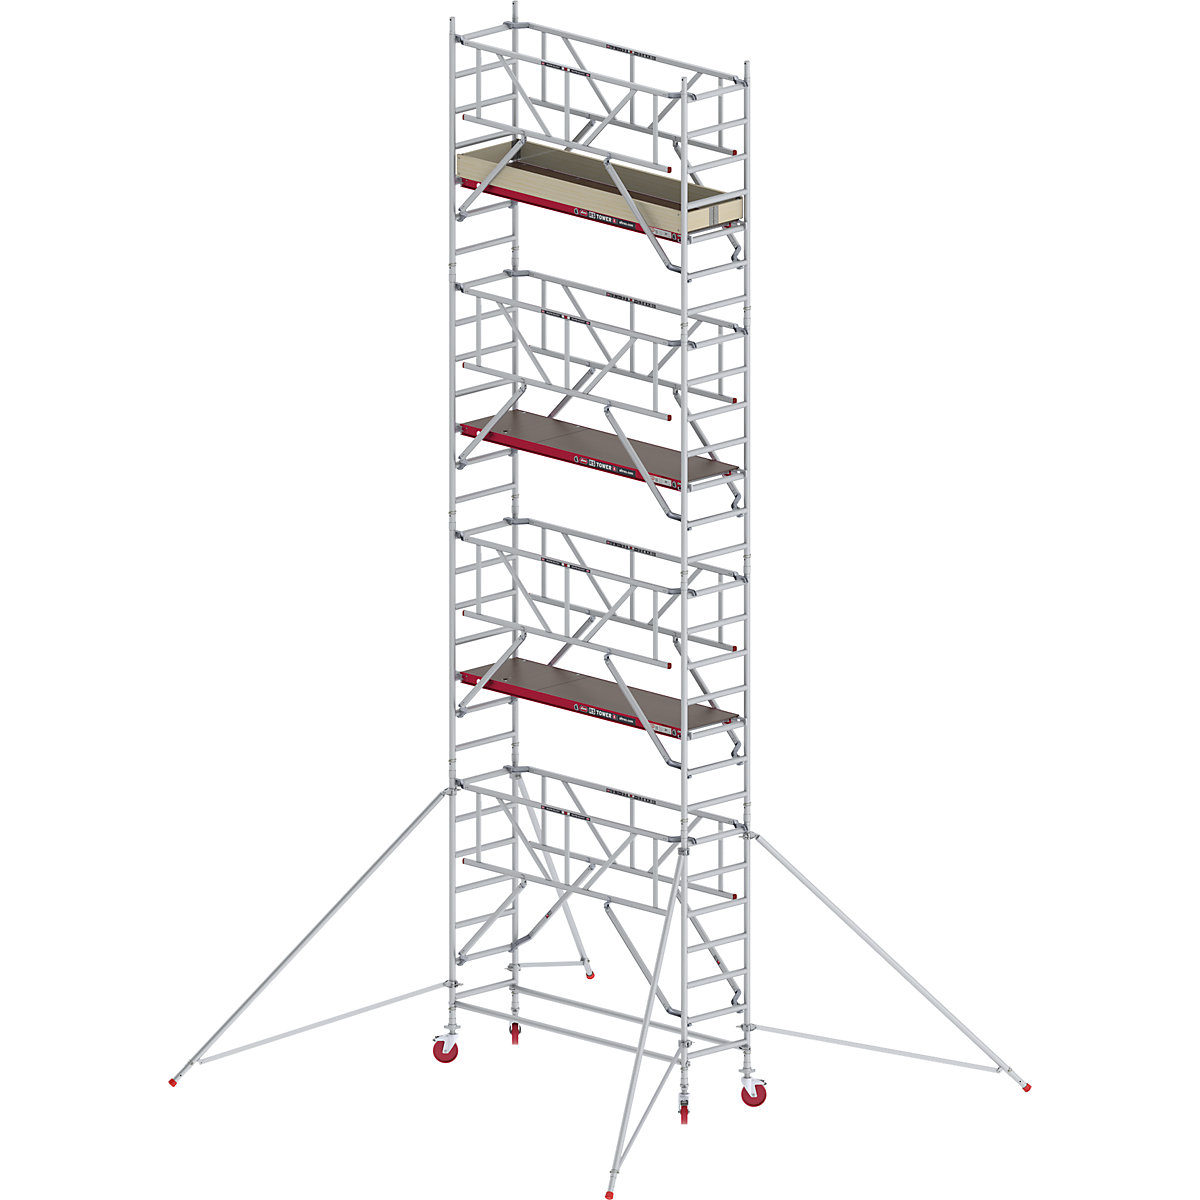 Rusztowanie ruchome RS TOWER 41, wąskie, z poręczą Safe-Quick® – Altrex, platforma drewniana, dł. 1,85 m, wys. robocza 9,20 m-7